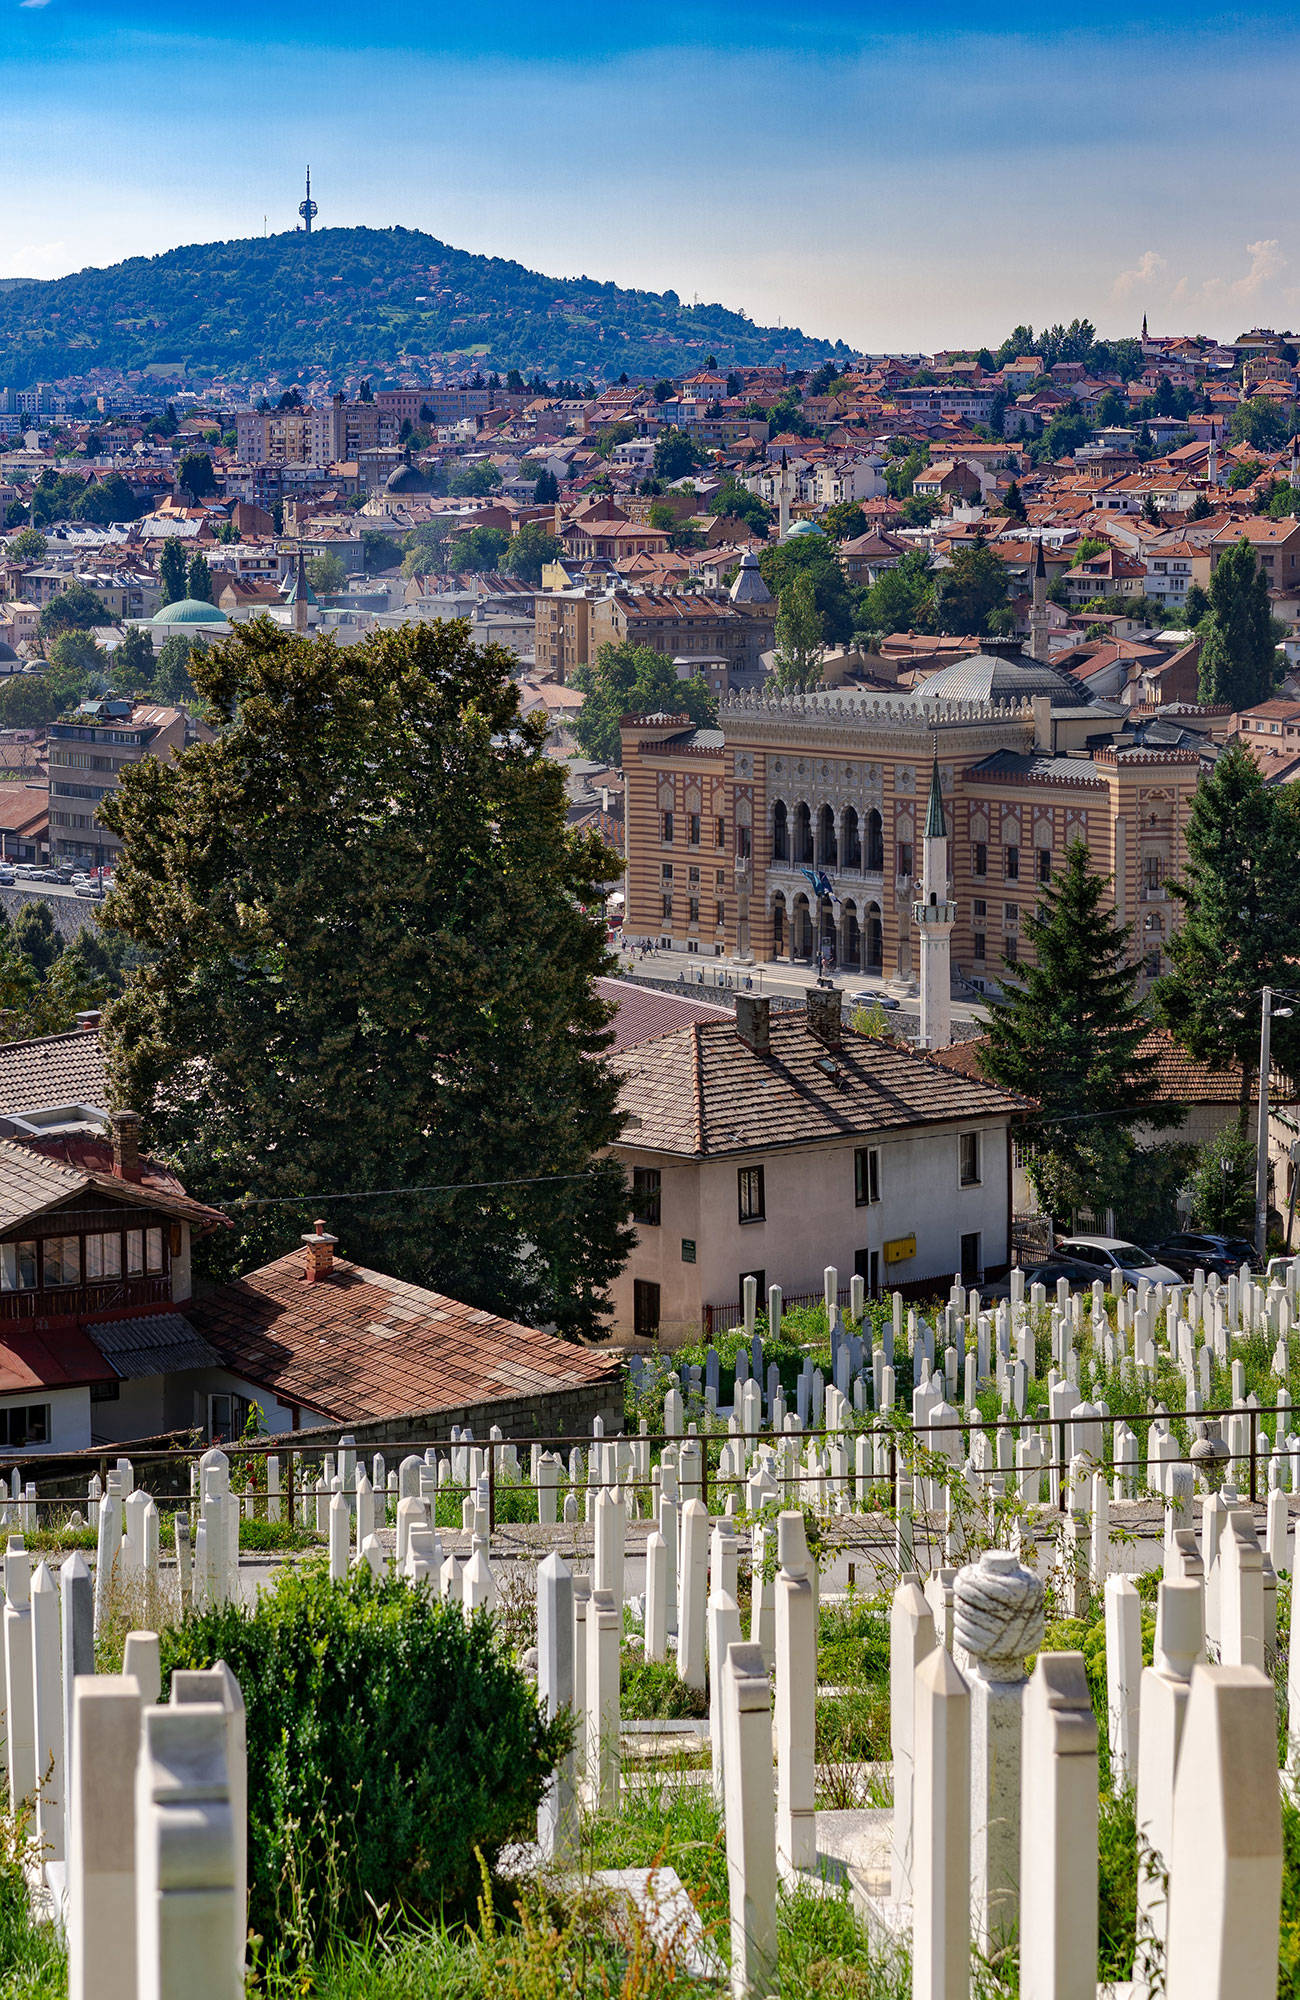 utsikt över kyrkogården och staden i bakgrunden under en resa till sarajevo